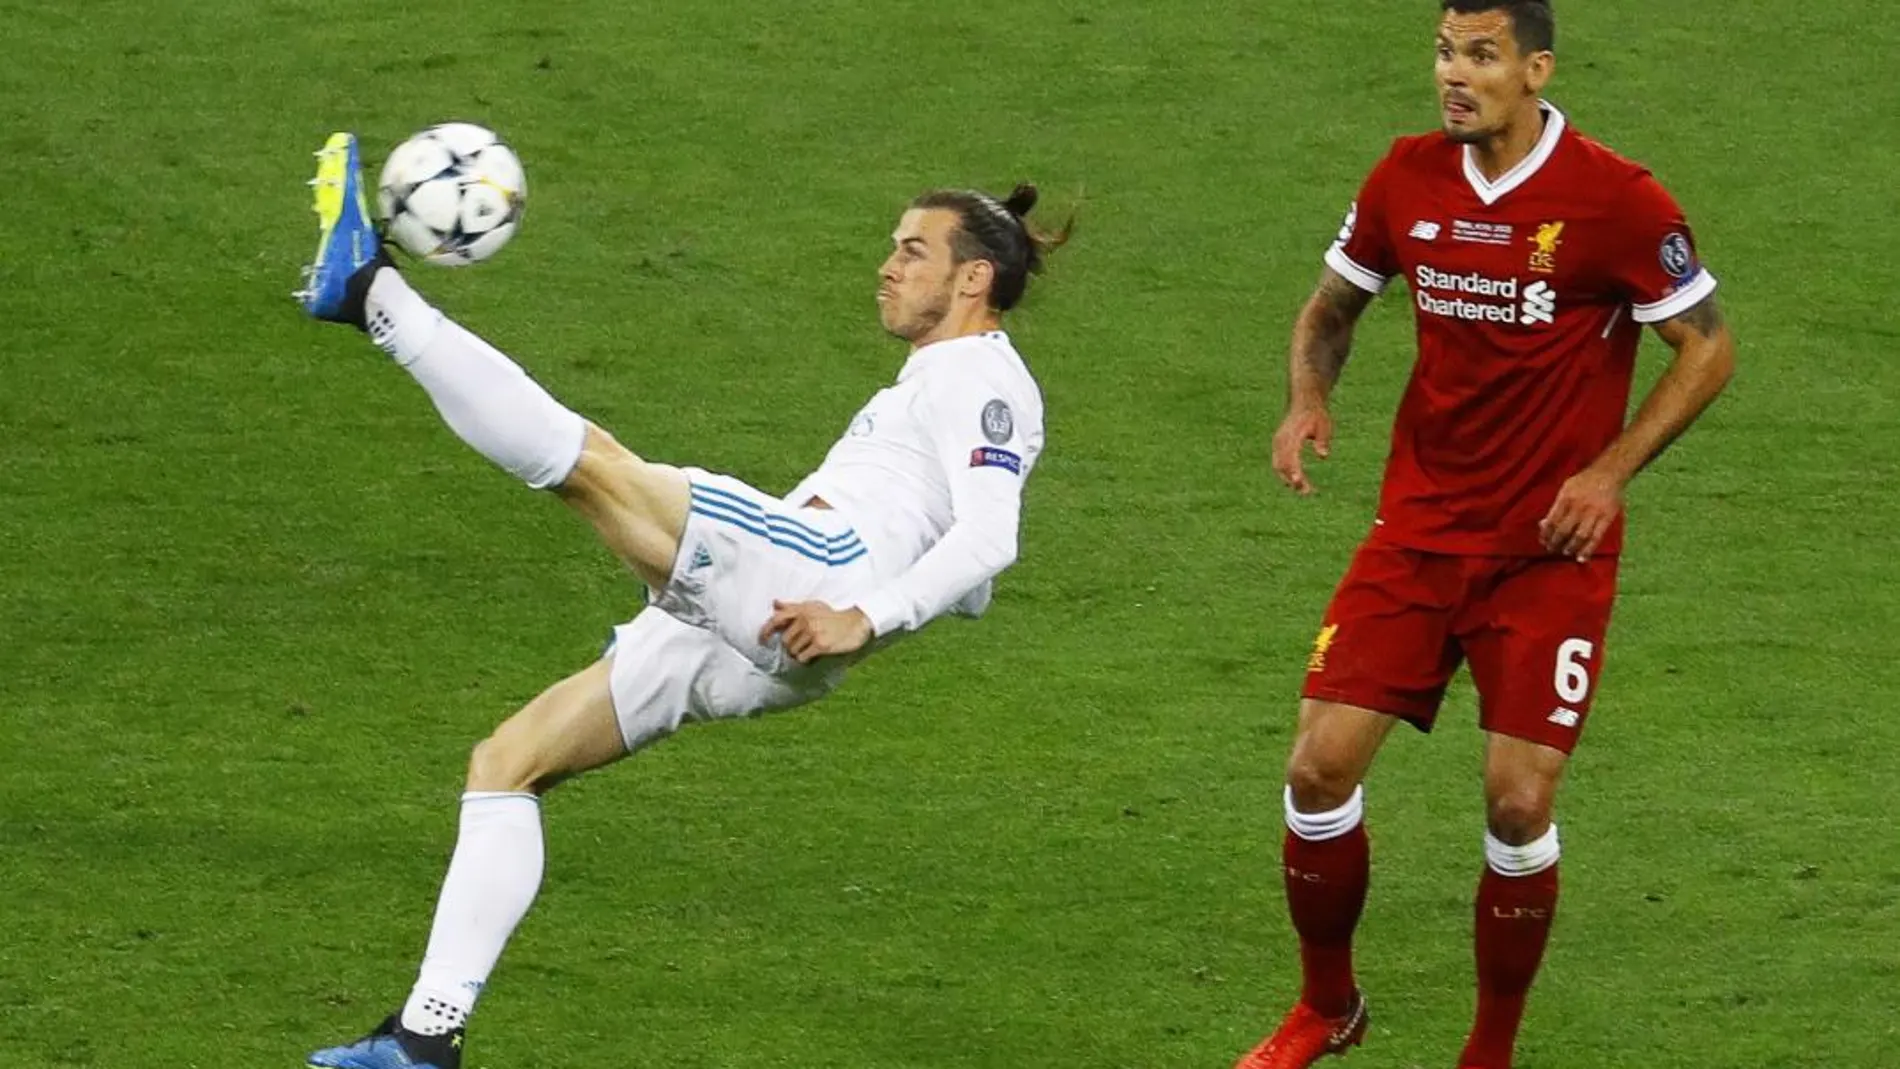 Gareth Bale golpea el balón en la chilena que le ha dado el segundo gol del Real Madrid.